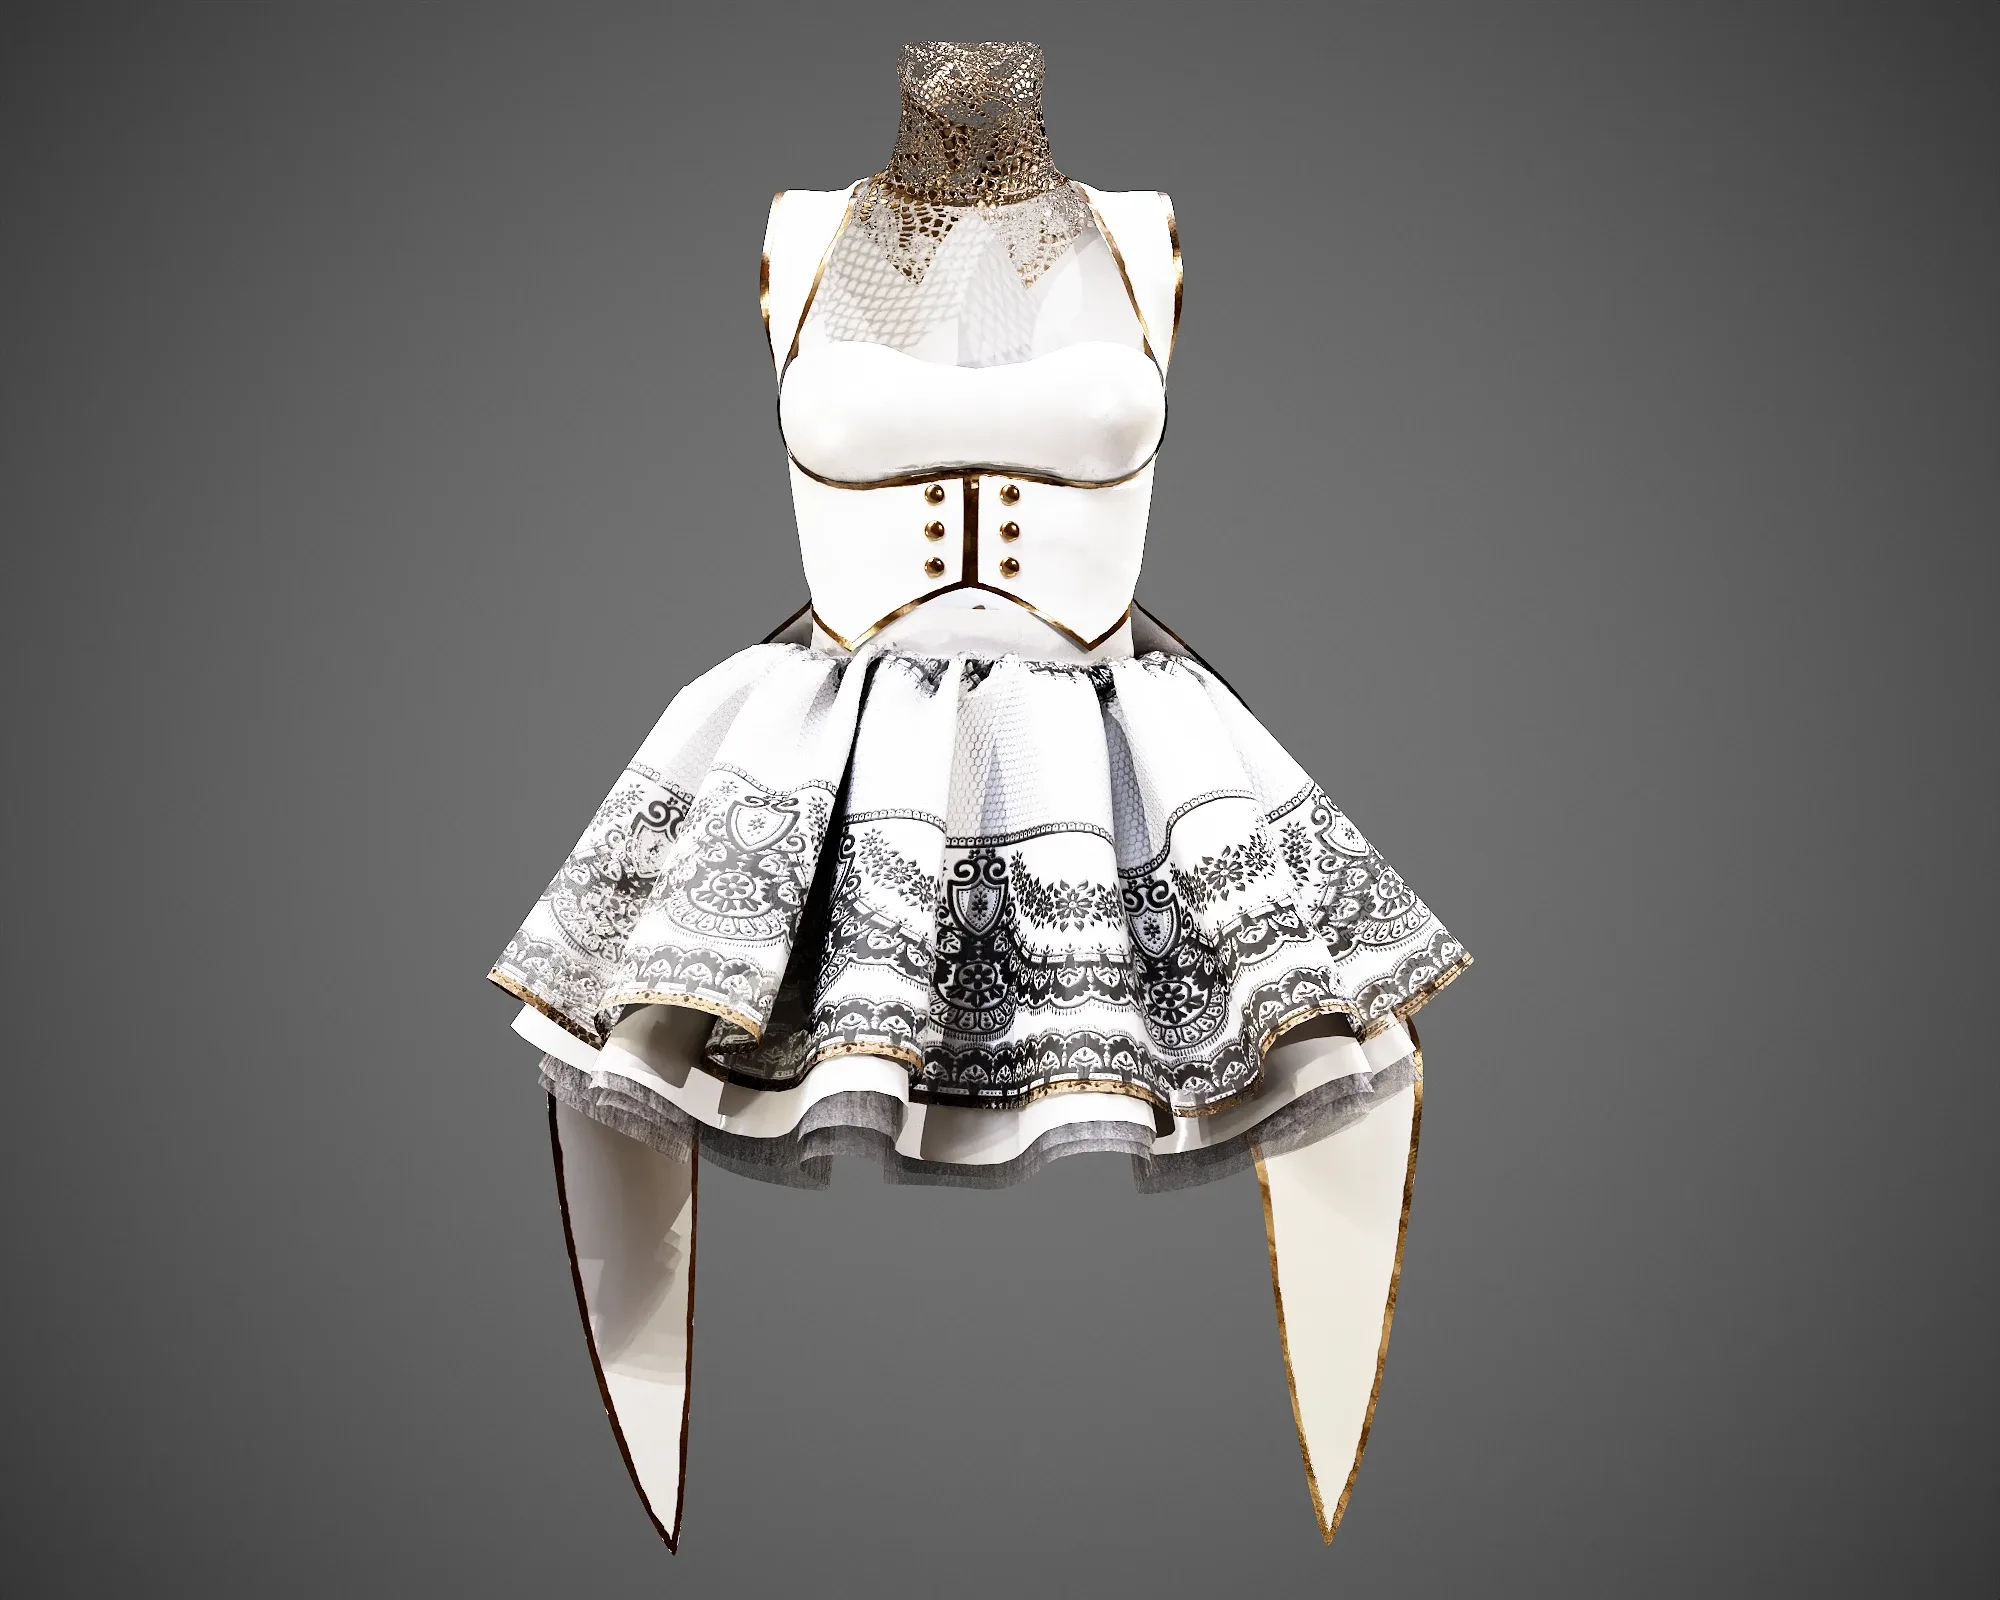 4 Dresses (low poly) vol_06:marvelous designer+obj+fbx+blender+pbr textures